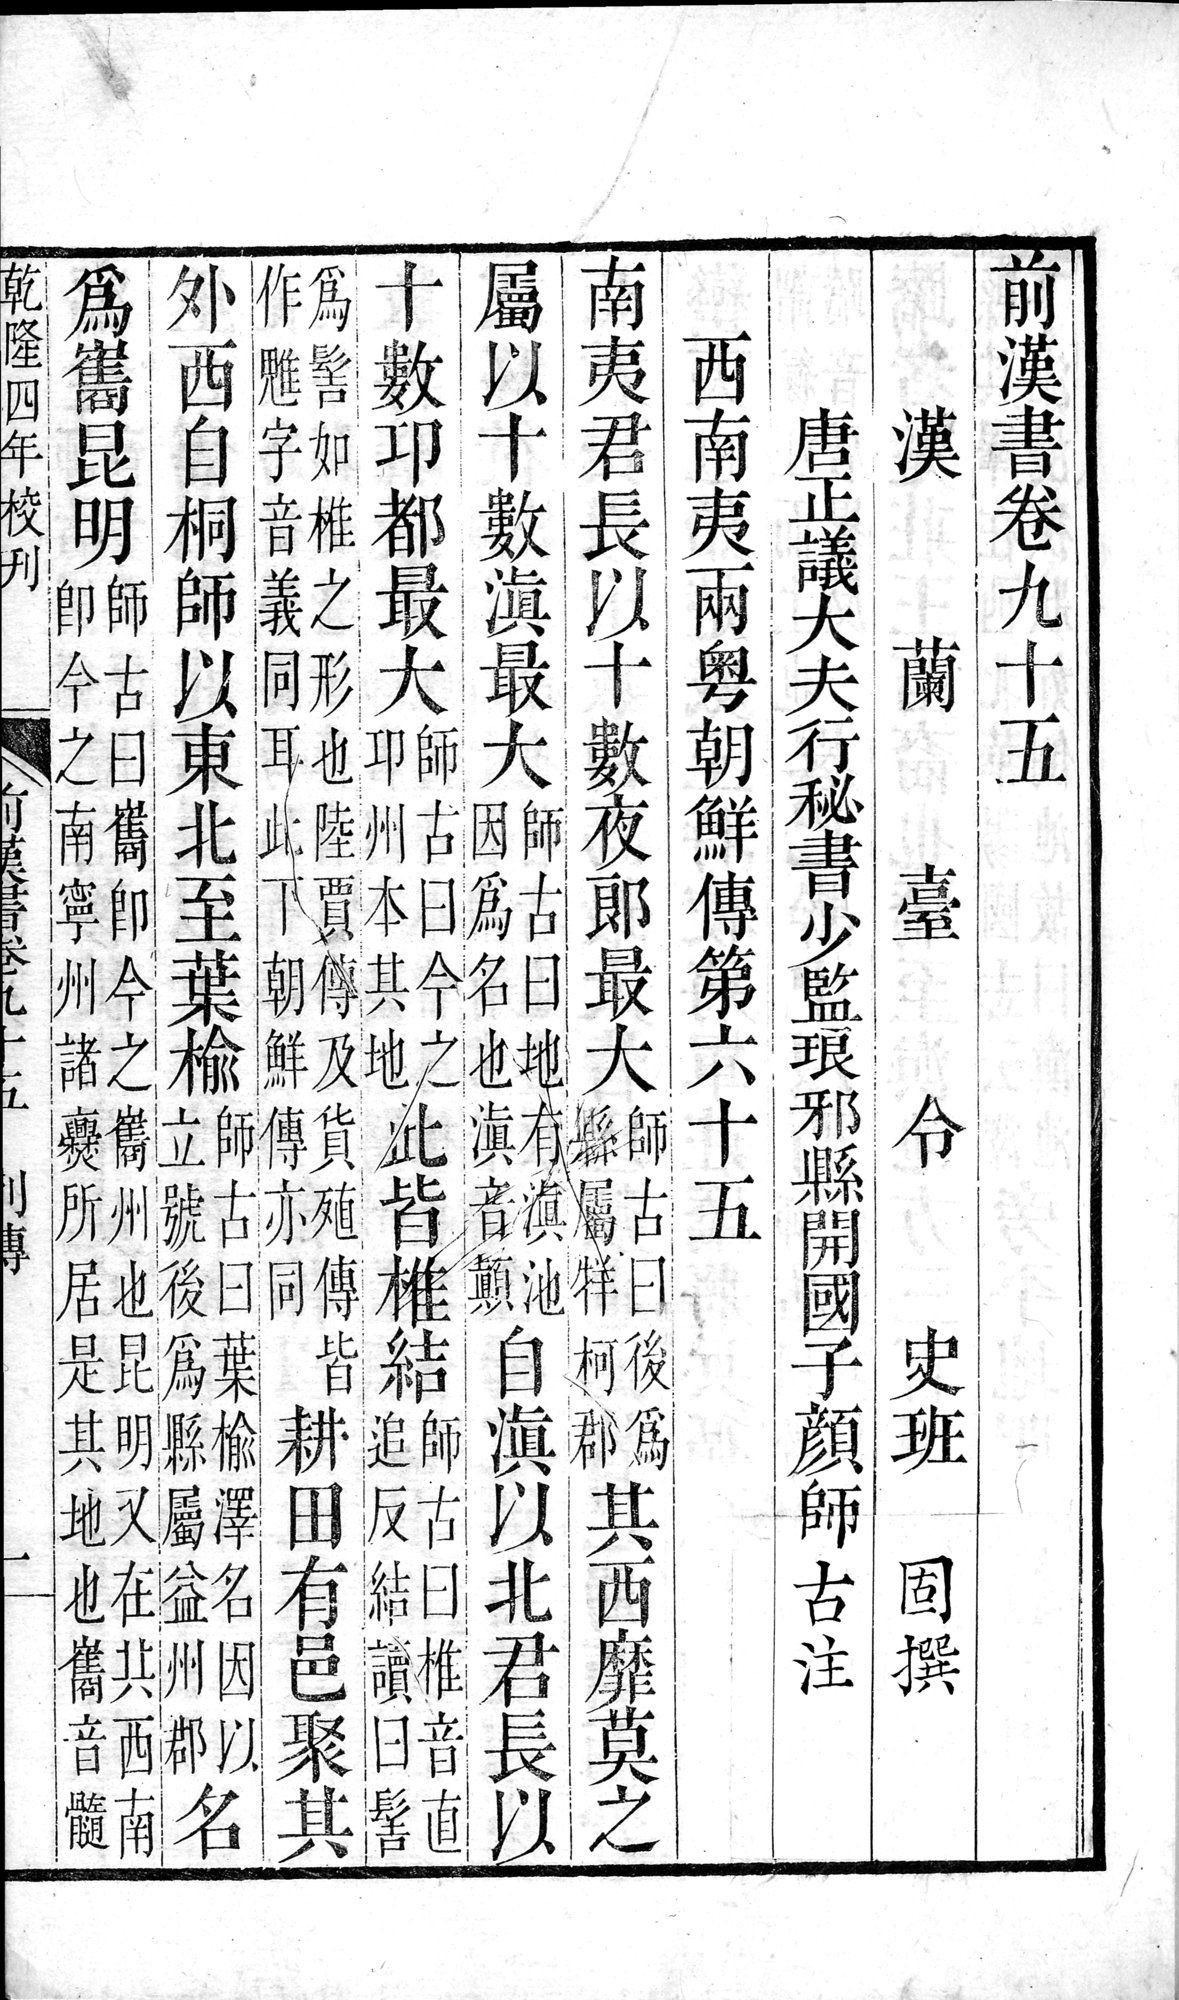 前漢書 : vol.95 / Page 1 (Grayscale High Resolution Image)